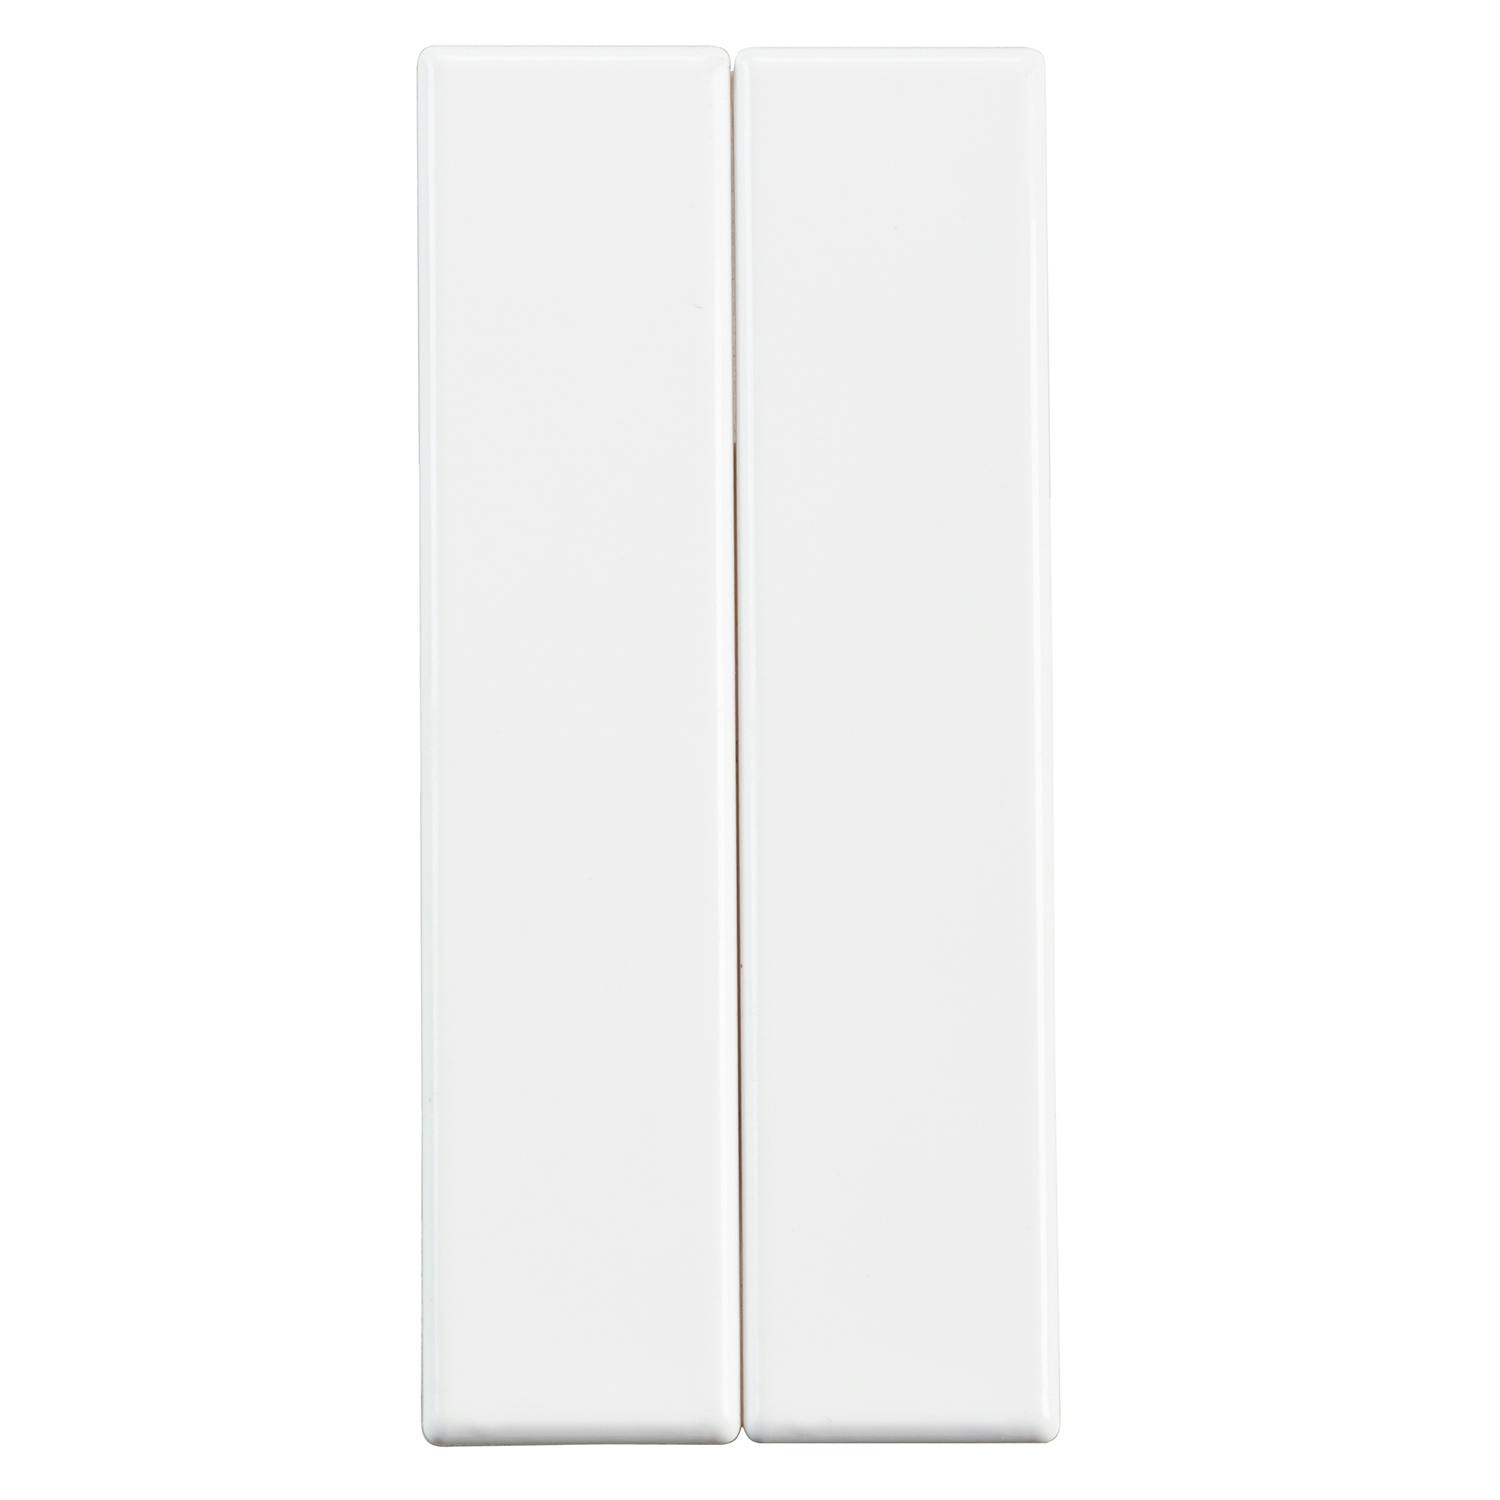 Address Light 2 Half Size Blank Panels on a white background